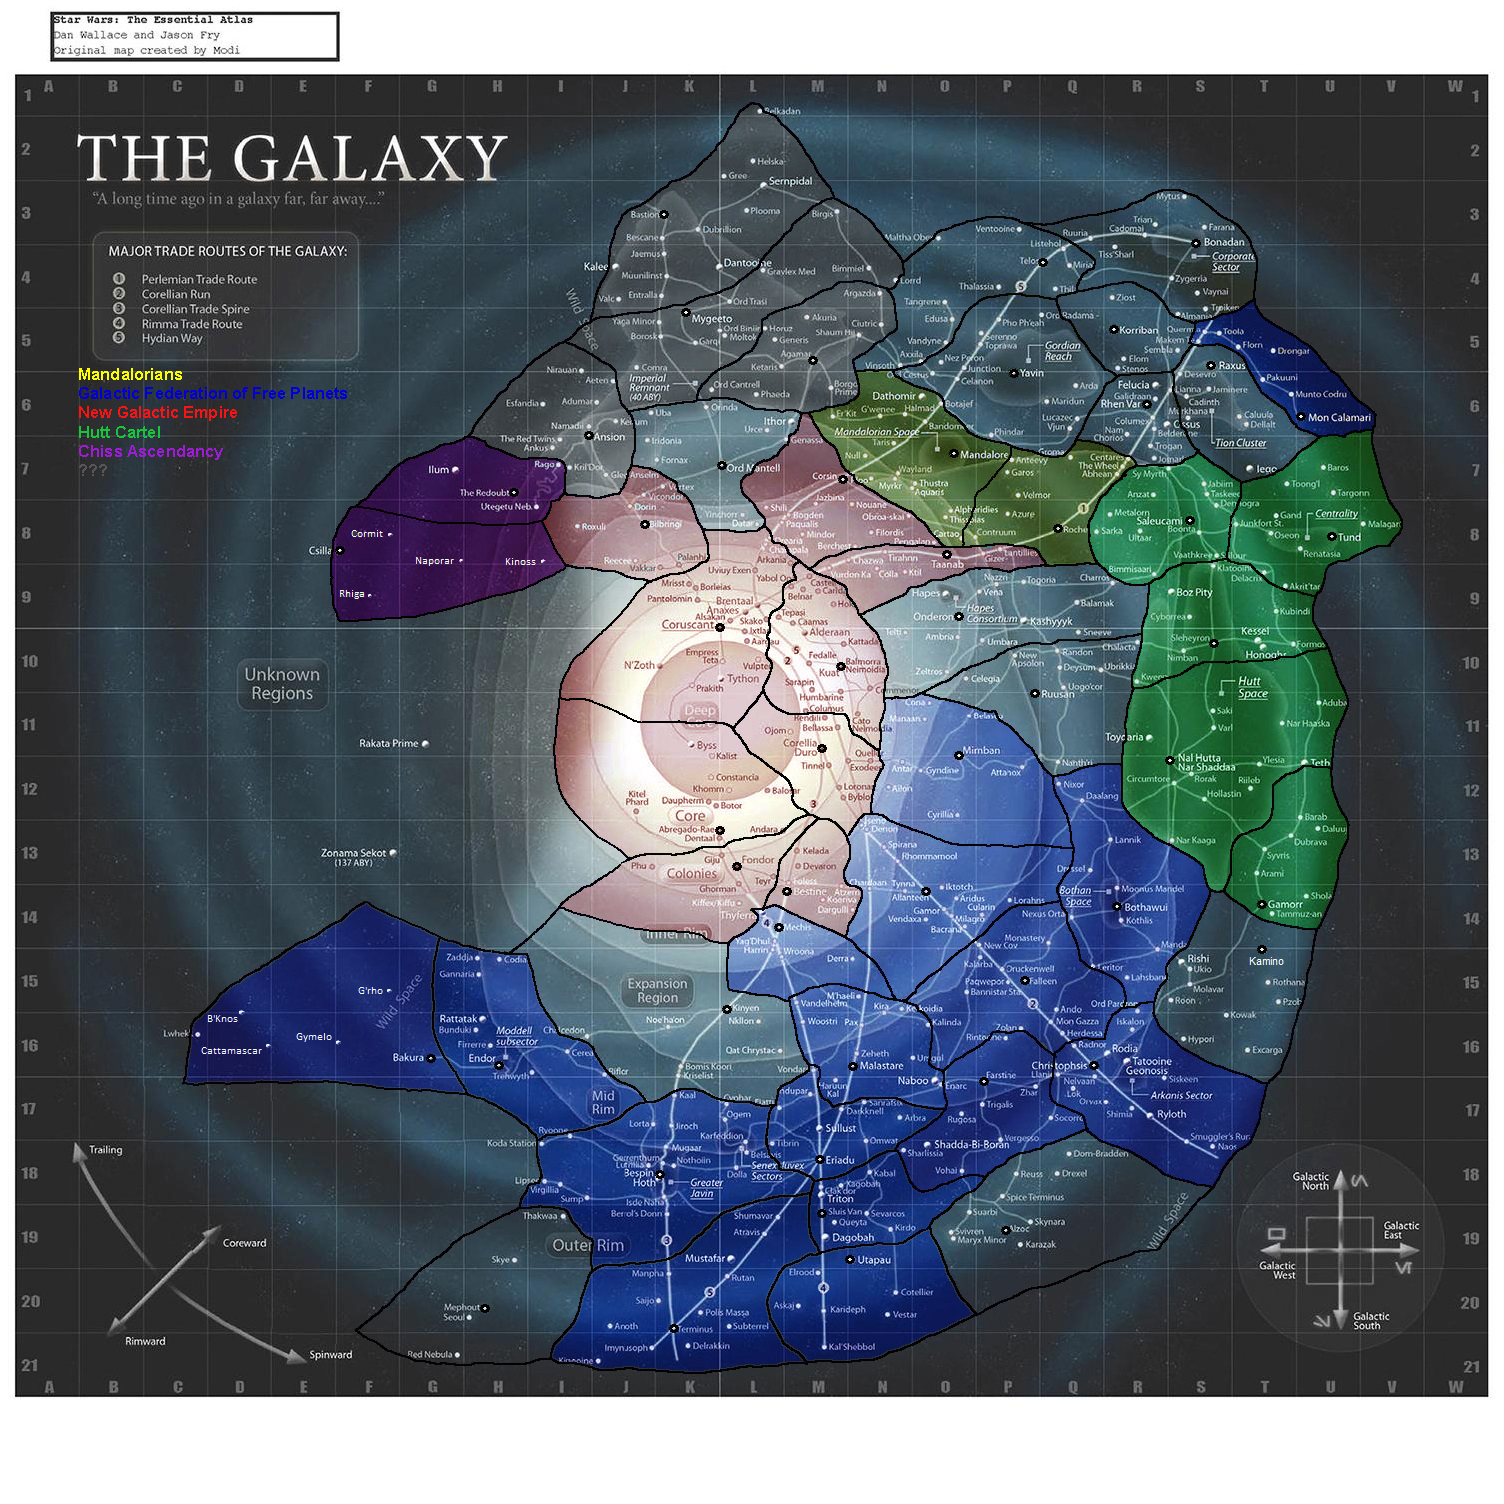 Interactive star map. Star Wars карта Галактики. Войны клонов карта Галактики. Карта Галактической империи Звездные войны. Карта Галактики Звездных войн войны клонов.